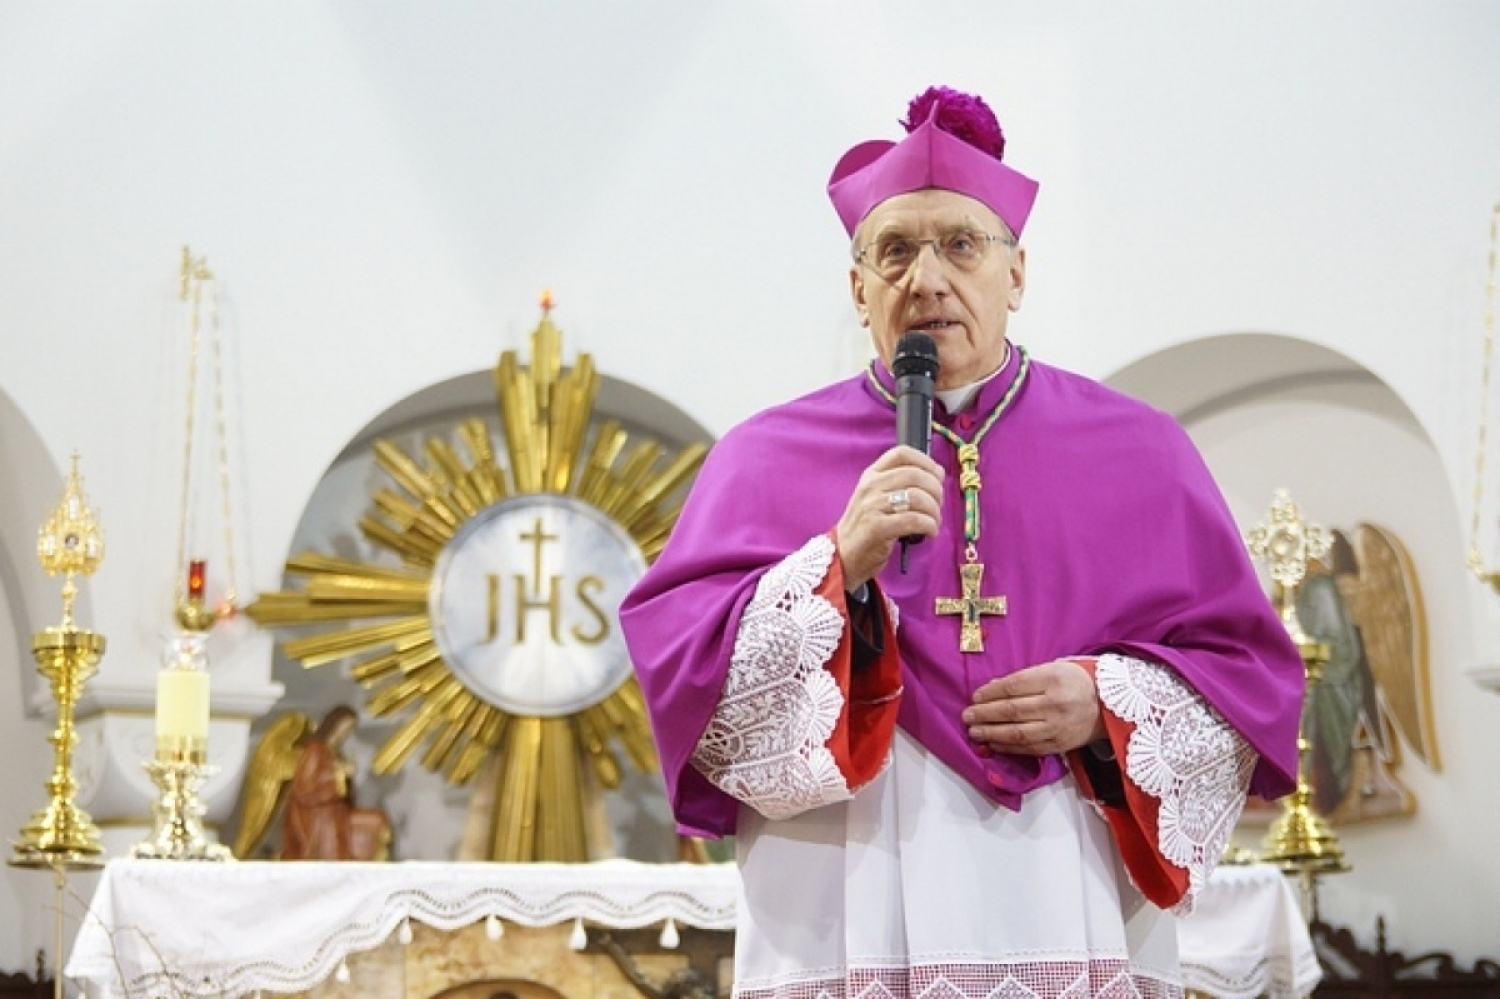 «Сотворит чудо оздоровления нации». Архиепископ Кондрусевич - о кризисе на границе и в стране